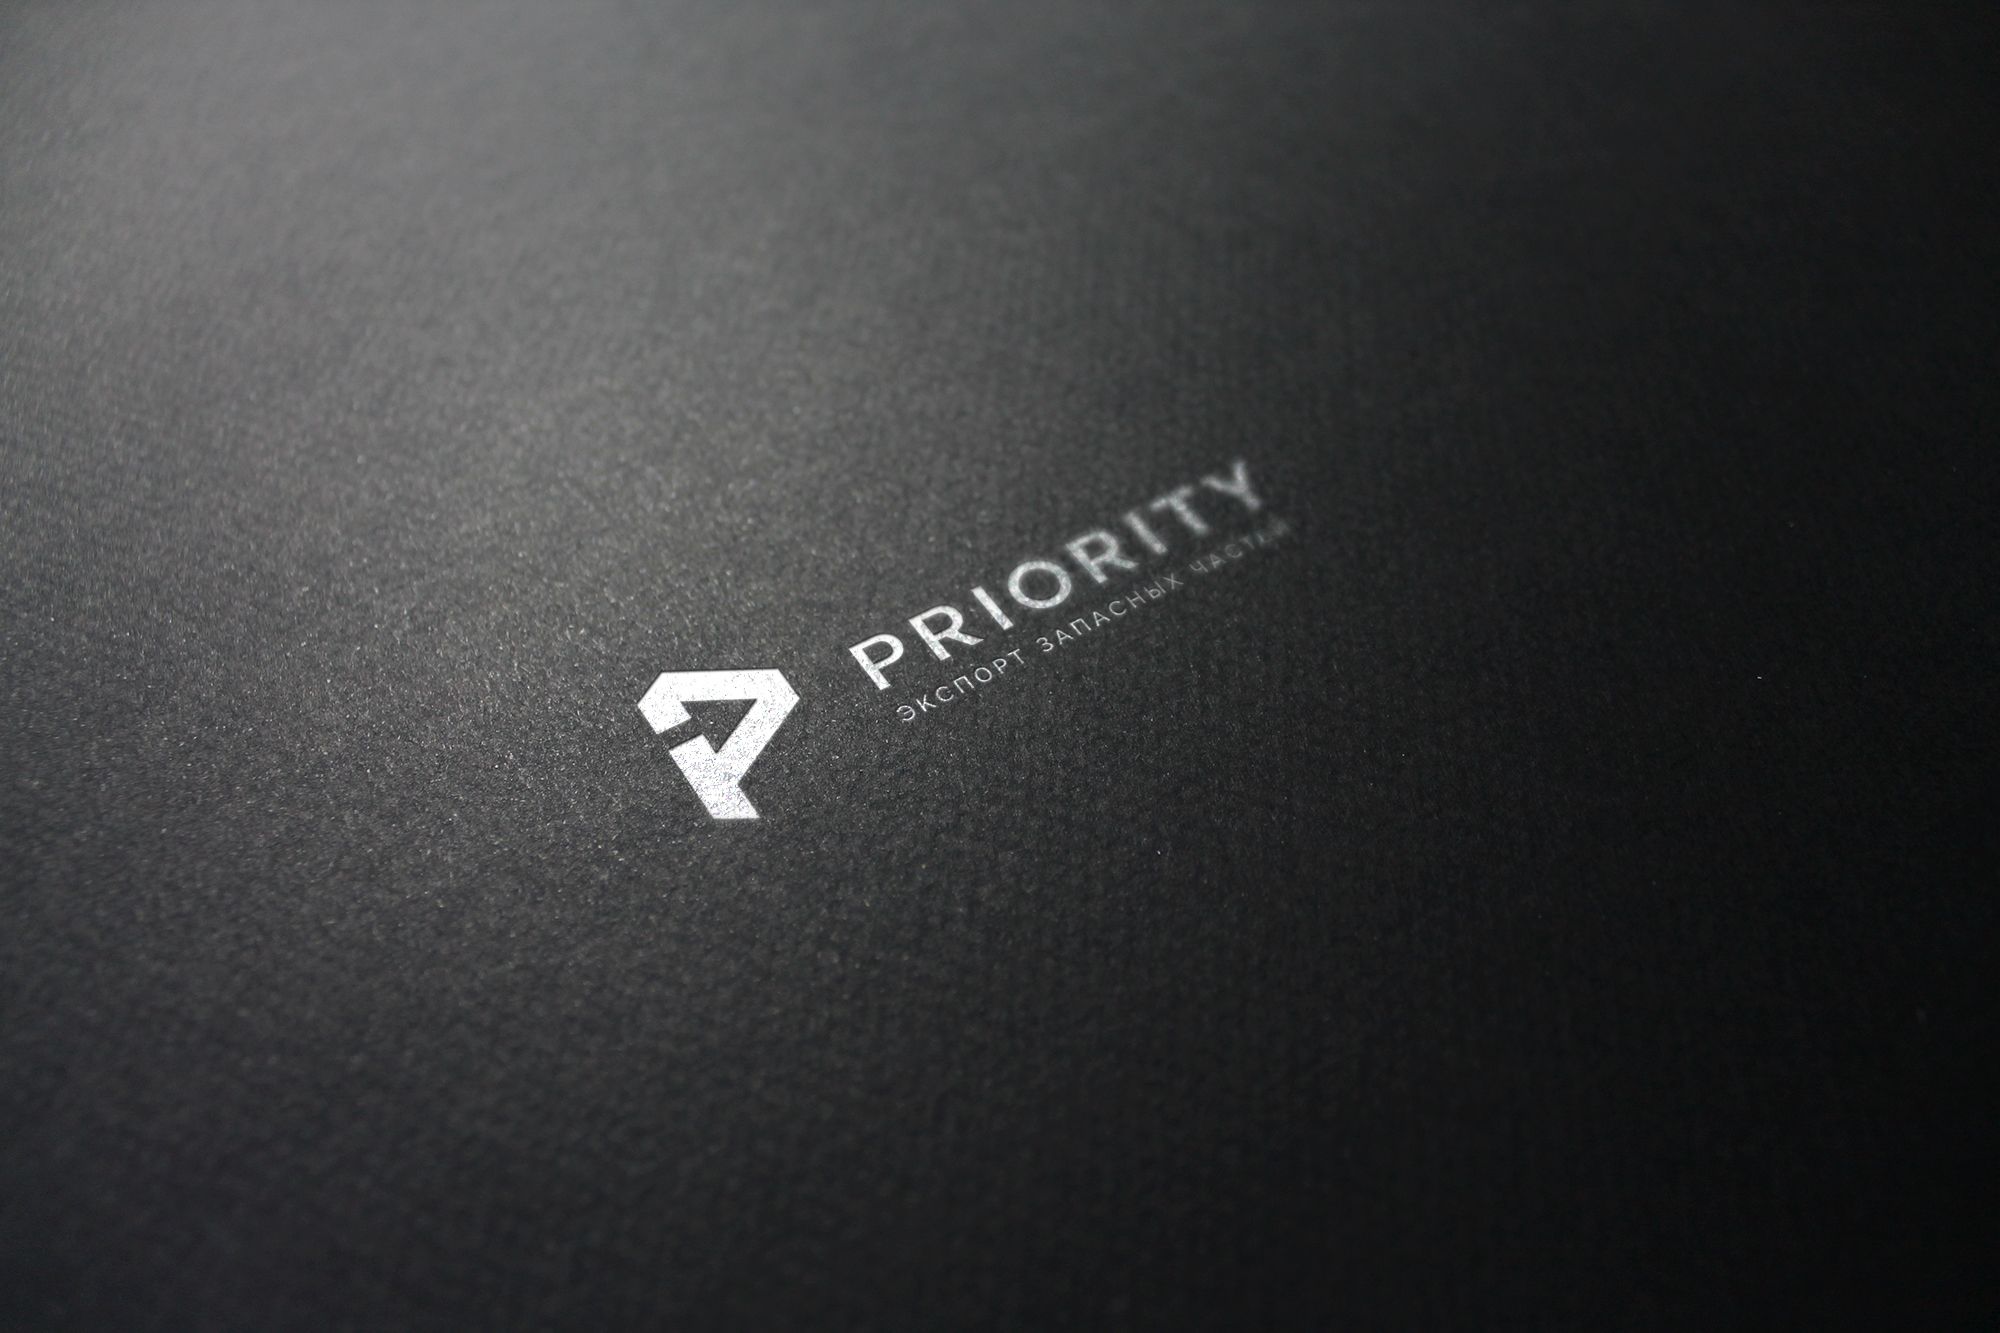 Лого и фирменный стиль для Приоритет (Priority) - дизайнер U4po4mak